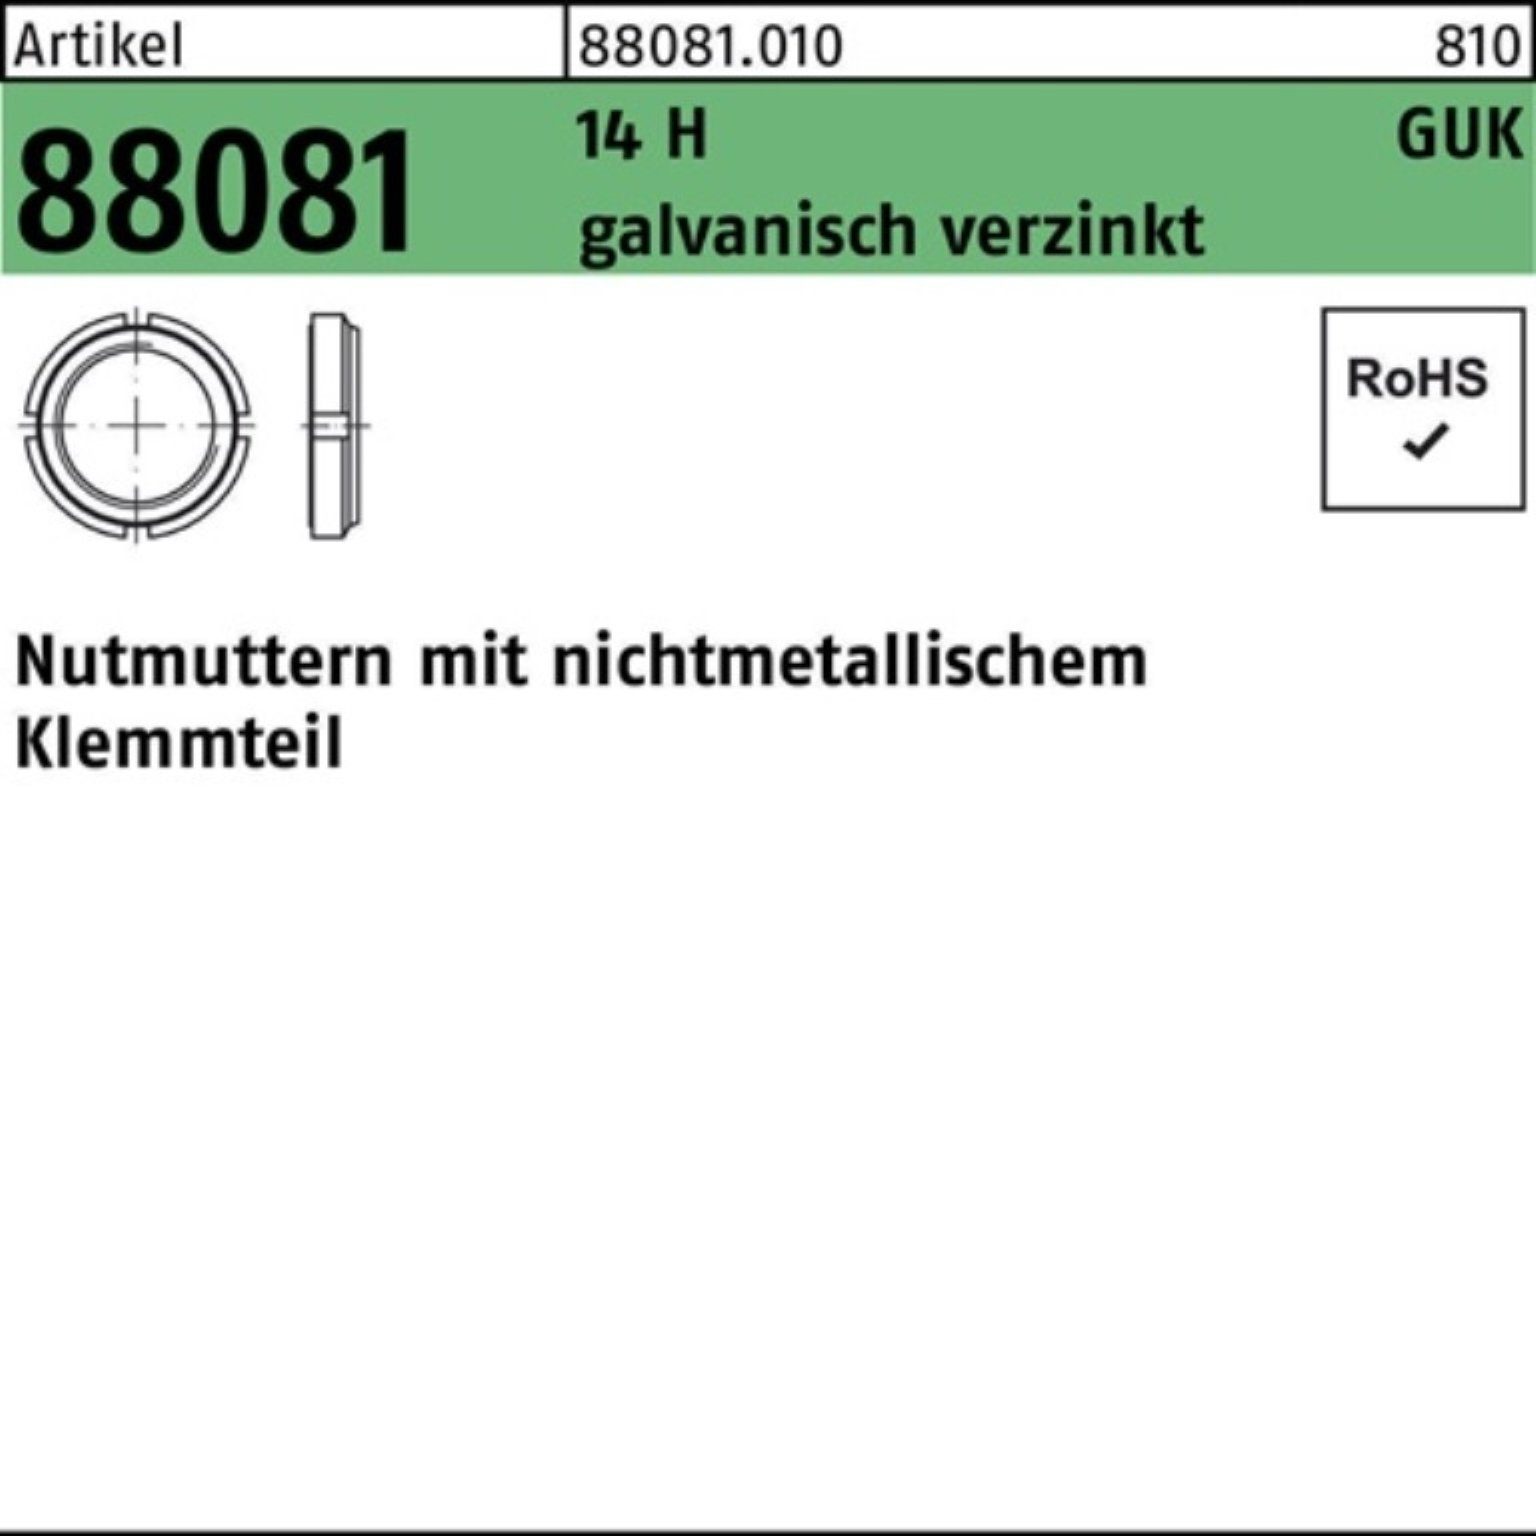 Reyher Nutmutter 100er Pack Nutmutter R 88081 Klemmteil GUK 7/M 35x1,5 14 H galv.verz.